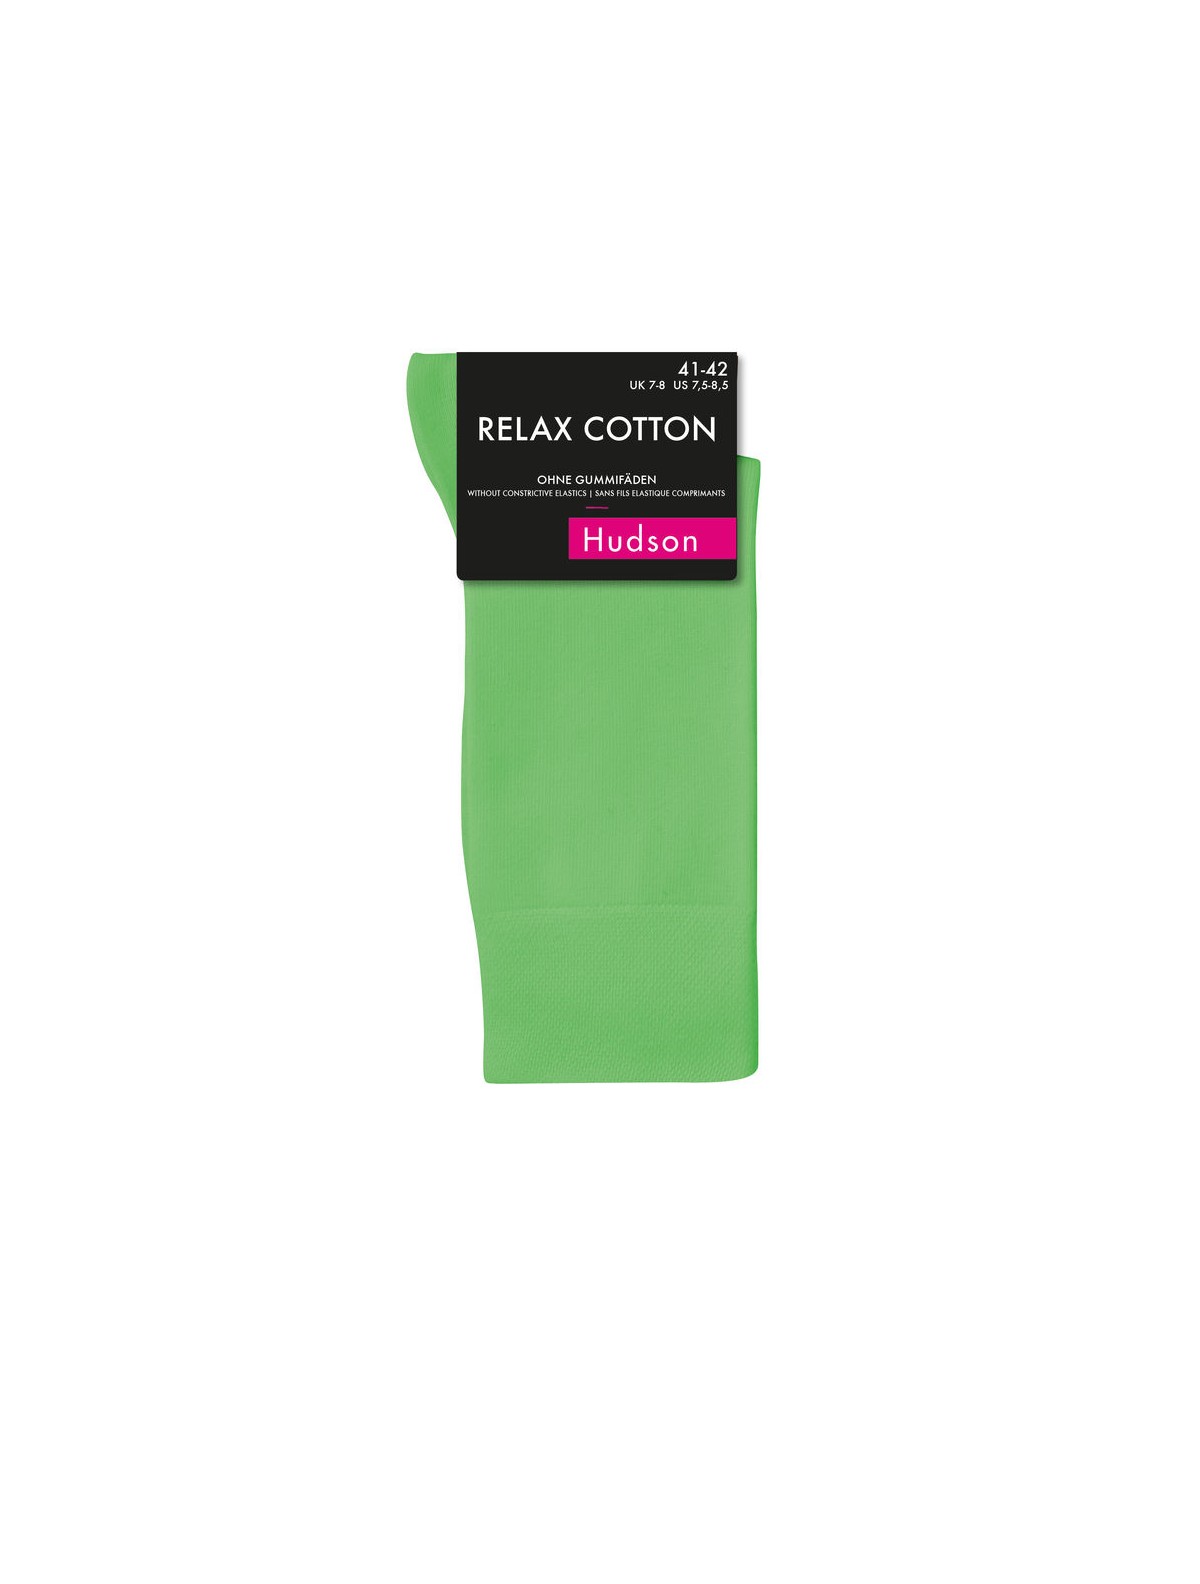 Hudson Relax Cotton Socks free of elastic threads men